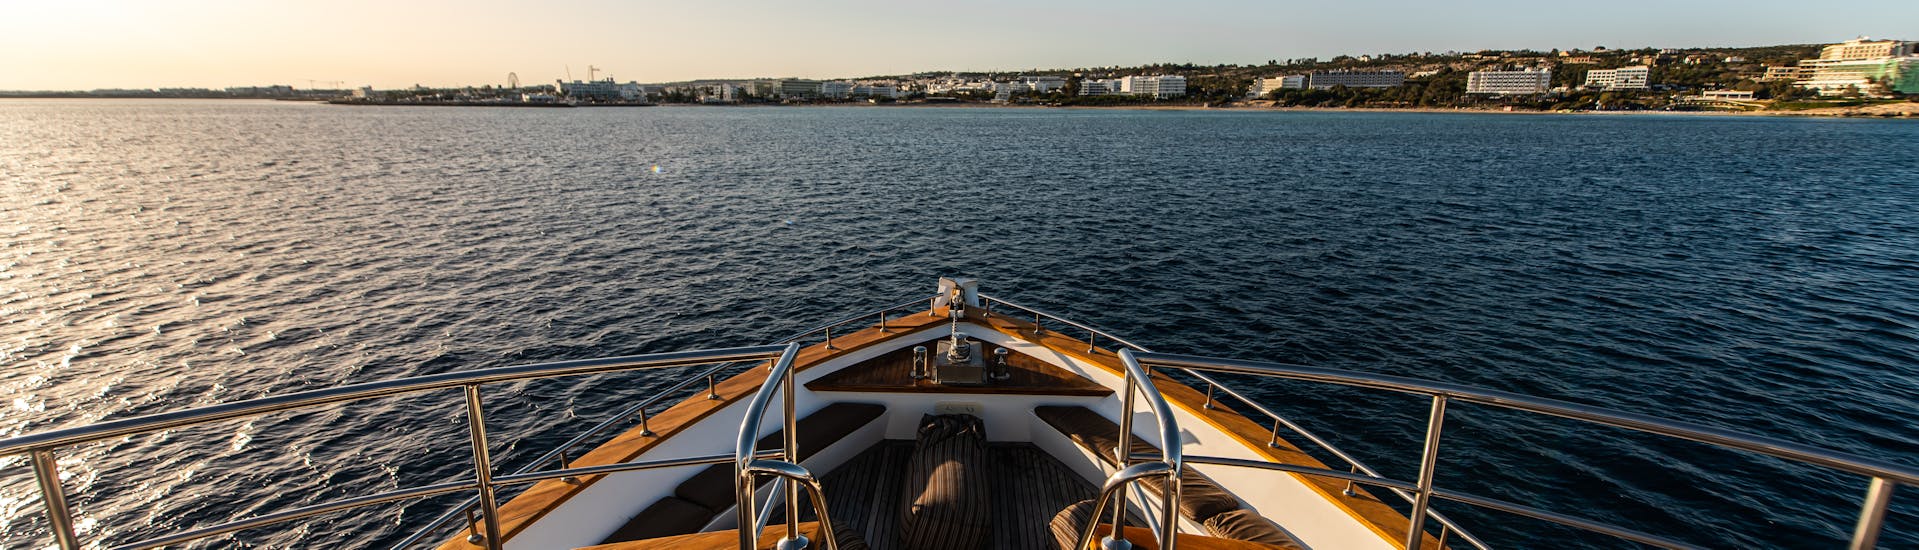 Vue du coucher de soleil depuis le bateau pendant la balade de luxe en bateau vers le lagon bleu depuis Ayia Napa avec Ocean Queen.